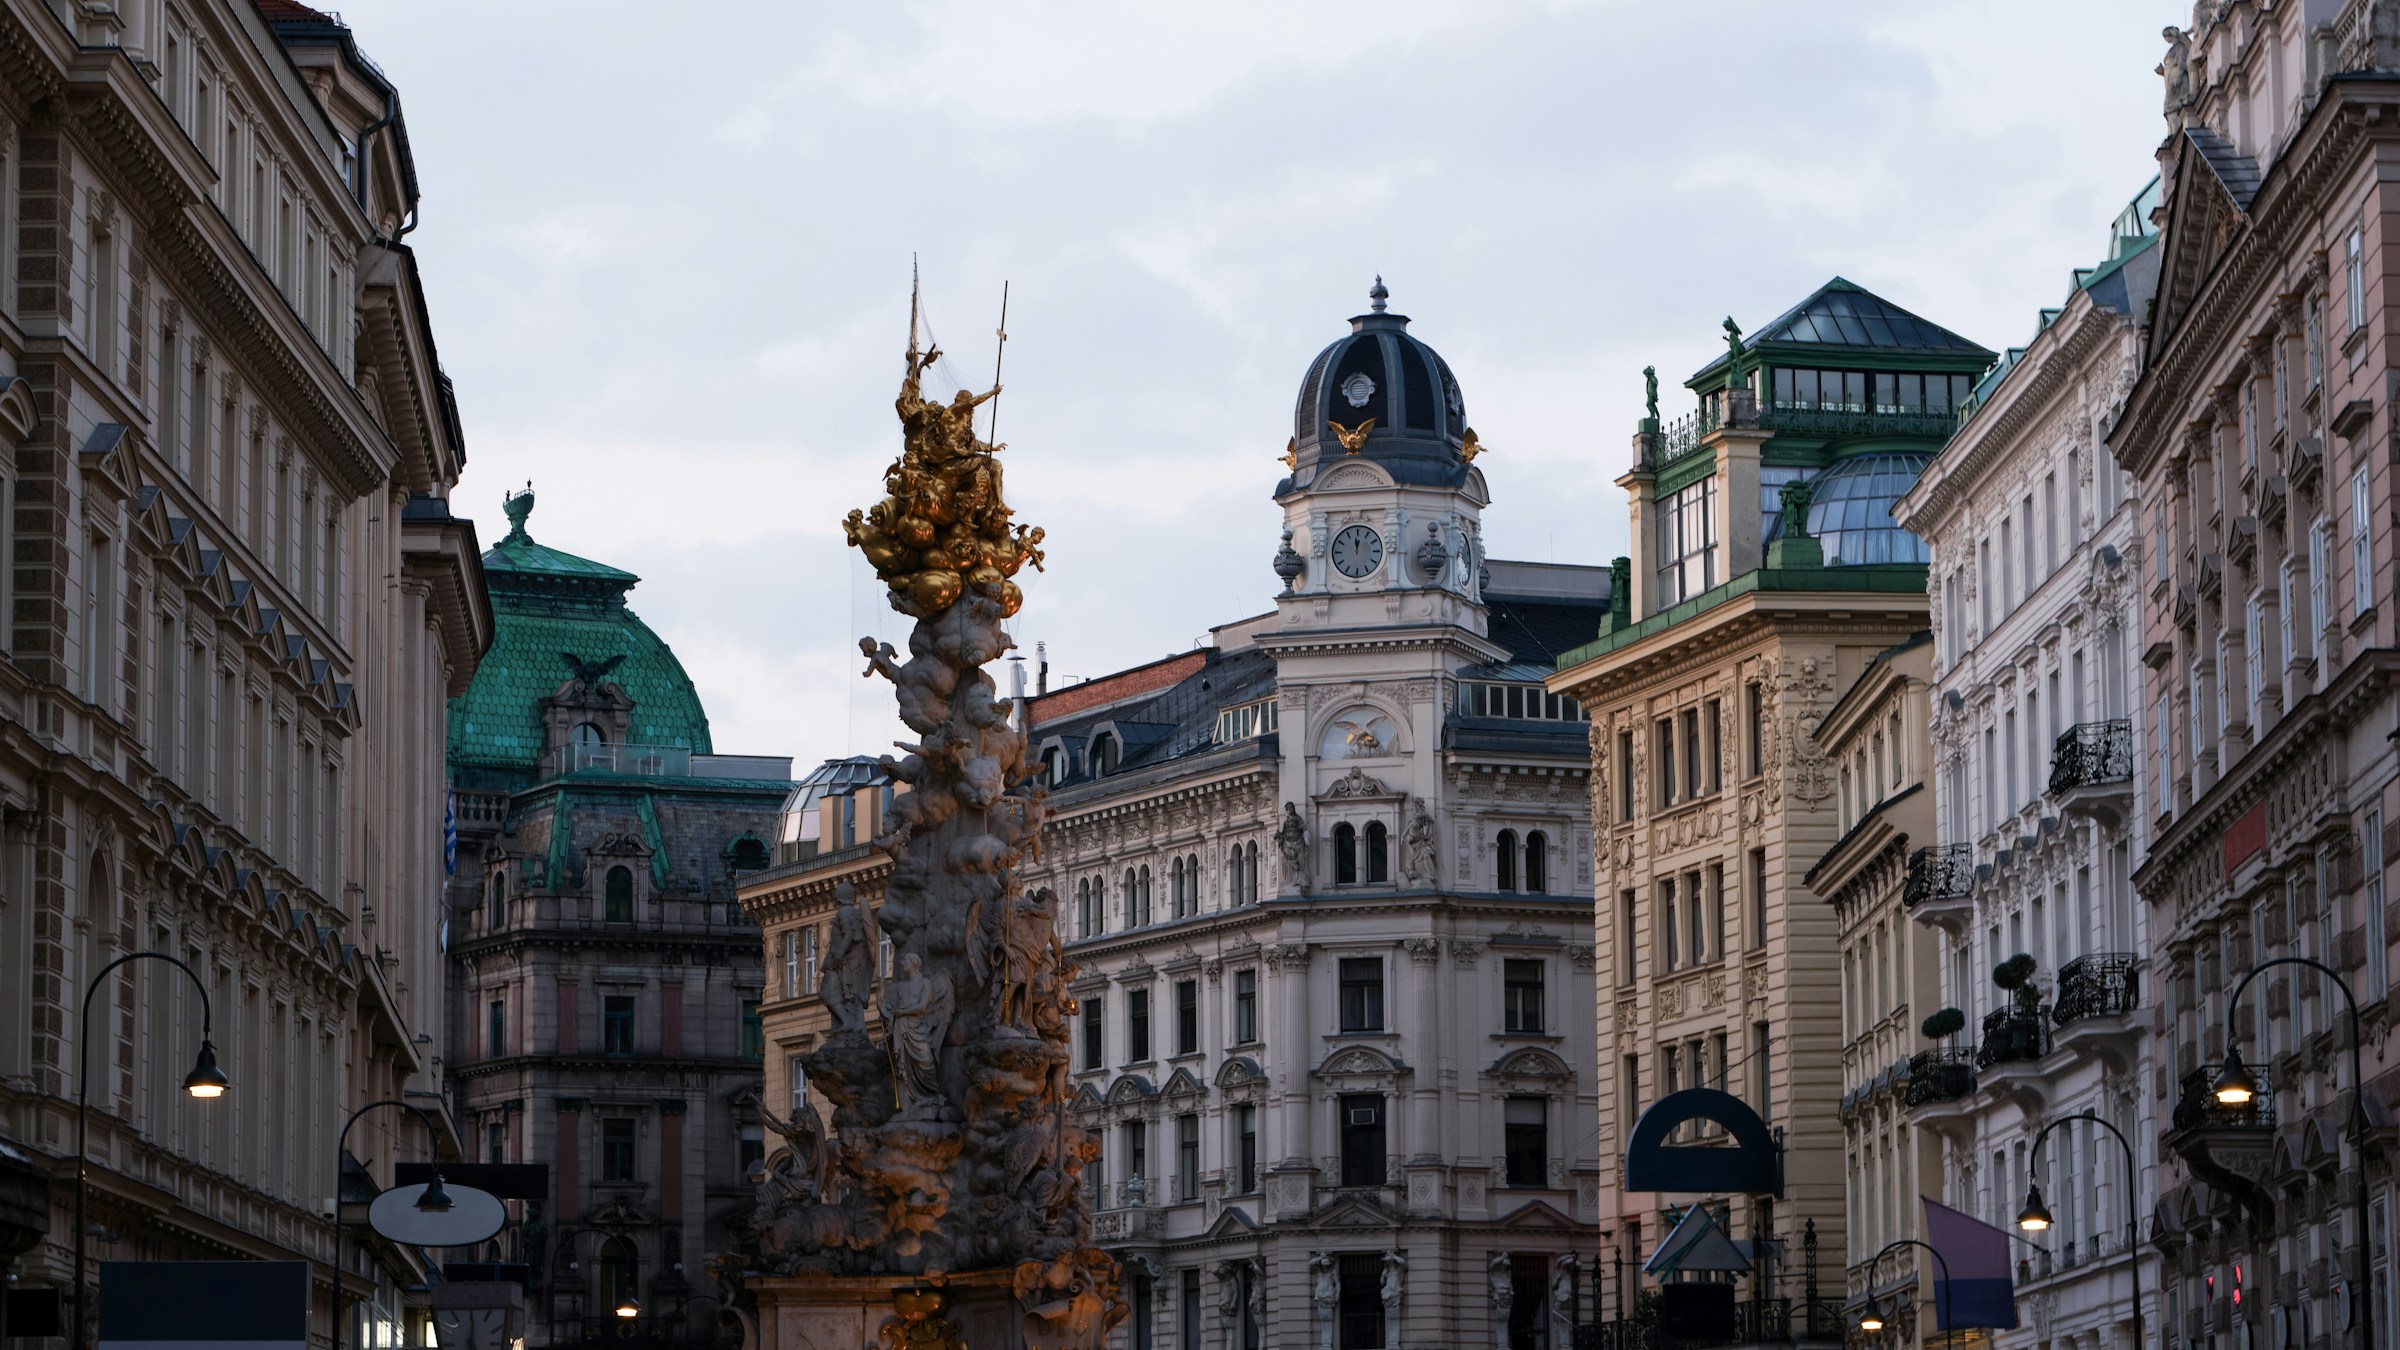 Vy över en gatustratning i Wien med en intrikat gyllene pestkolonn och klassiska byggnader med kupoler och fasader, vid skymning."